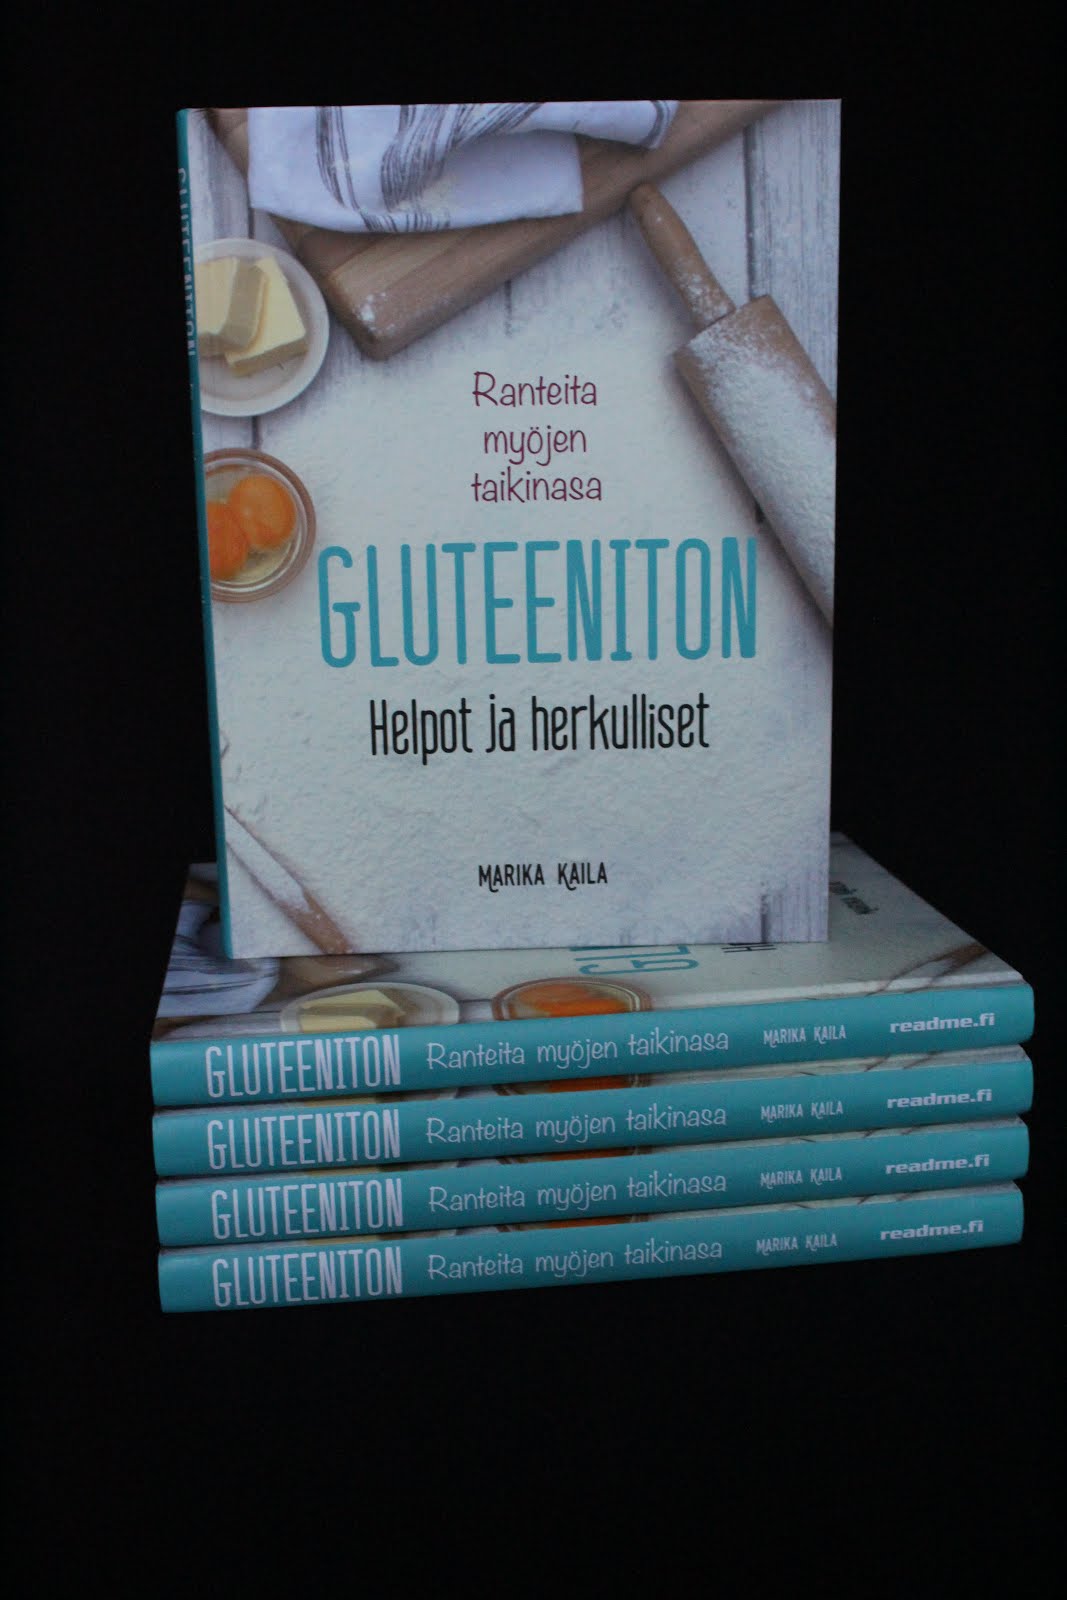 Kirjoittamani Gluteeniton helpot ja herkulliset kirja